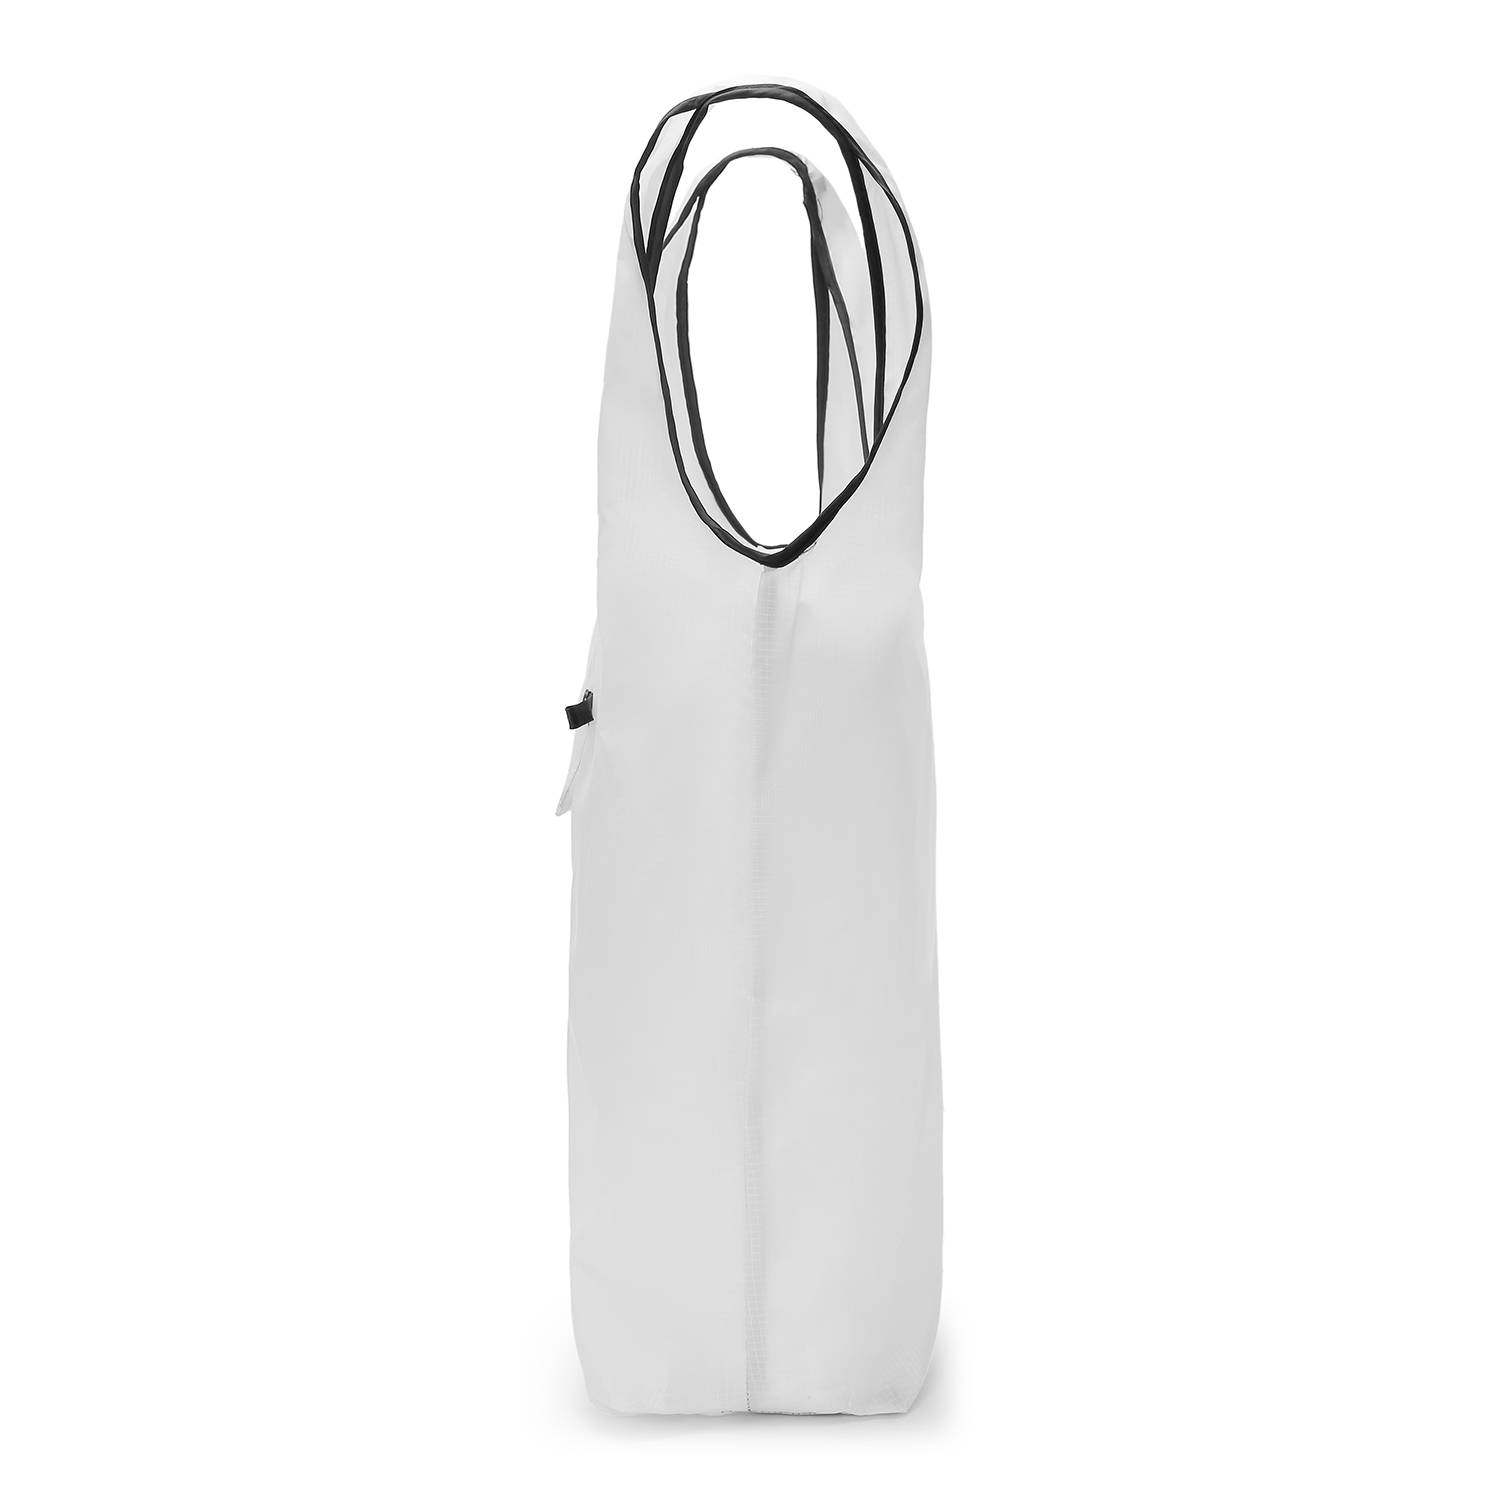 All-Over Print Foldable Shopping Bag | Print On Demand-5